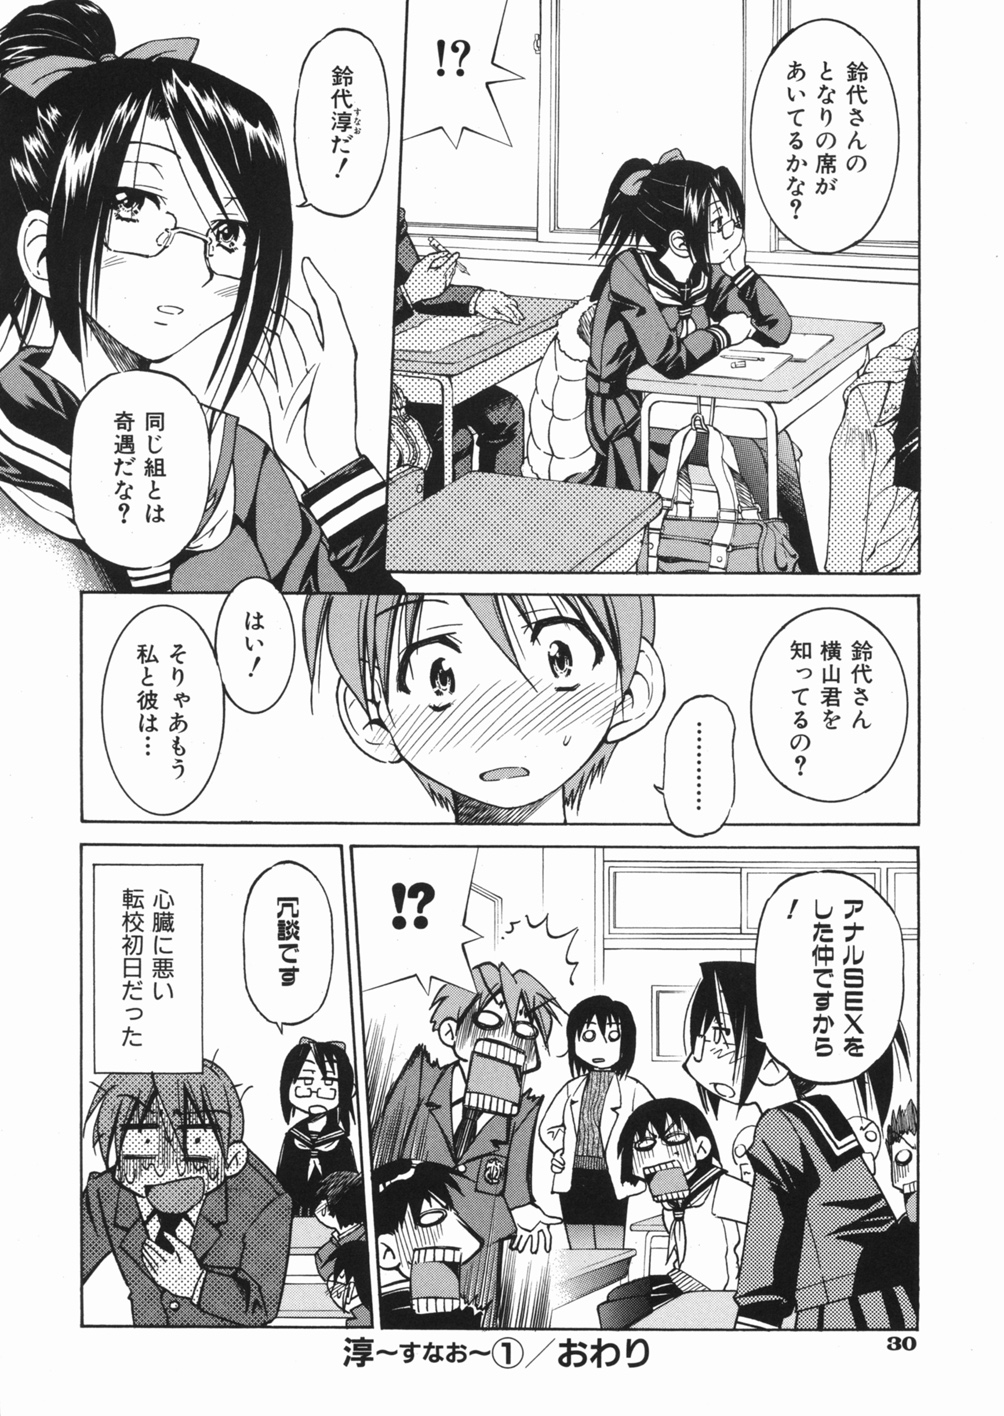 [Inoue Yoshihisa] Sunao page 34 full